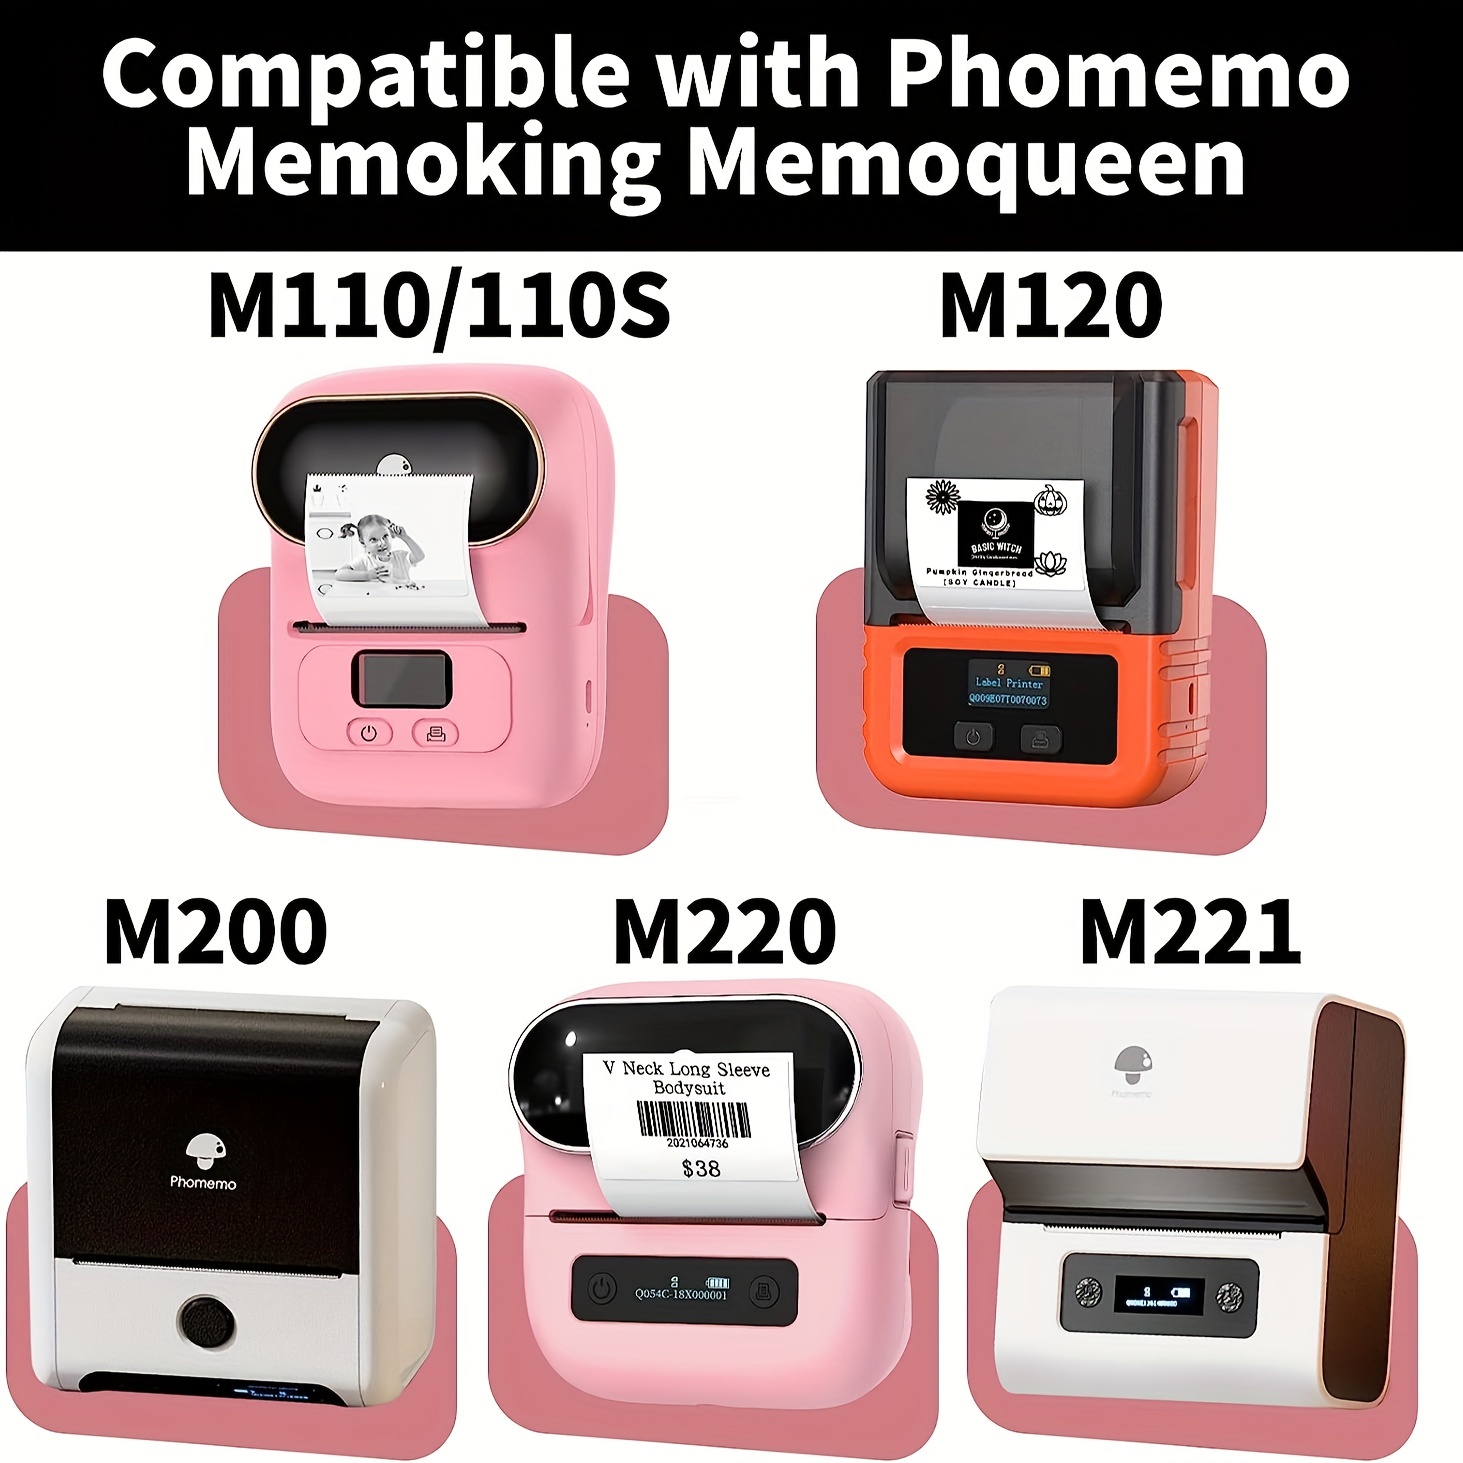 phomemo étiquette marqueur thermique imprimante d'étiquettes pour